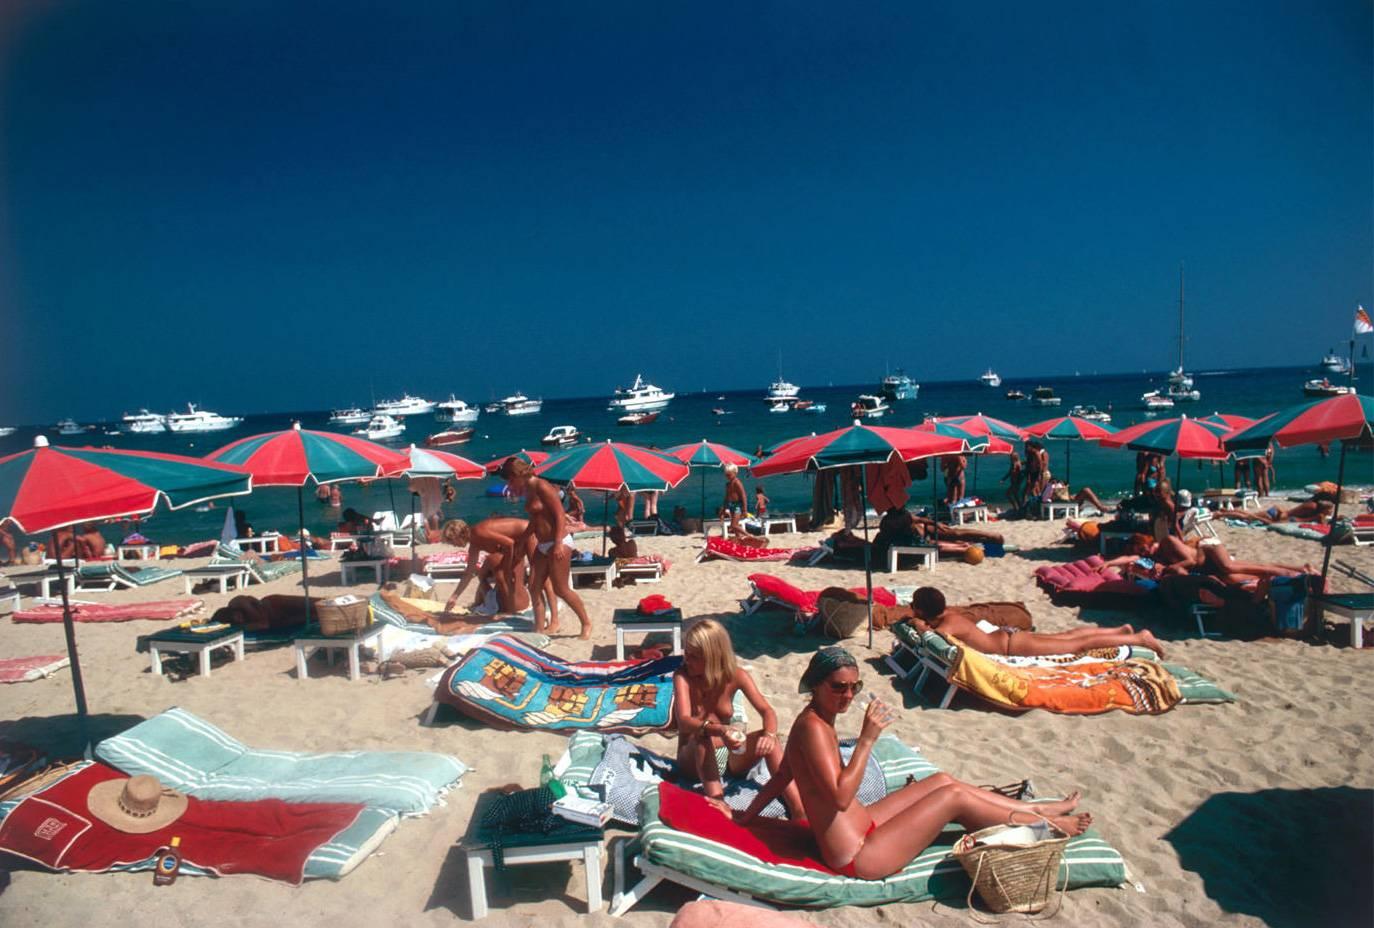 La plage de St. Tropez (édition de la succession d'Aarons)